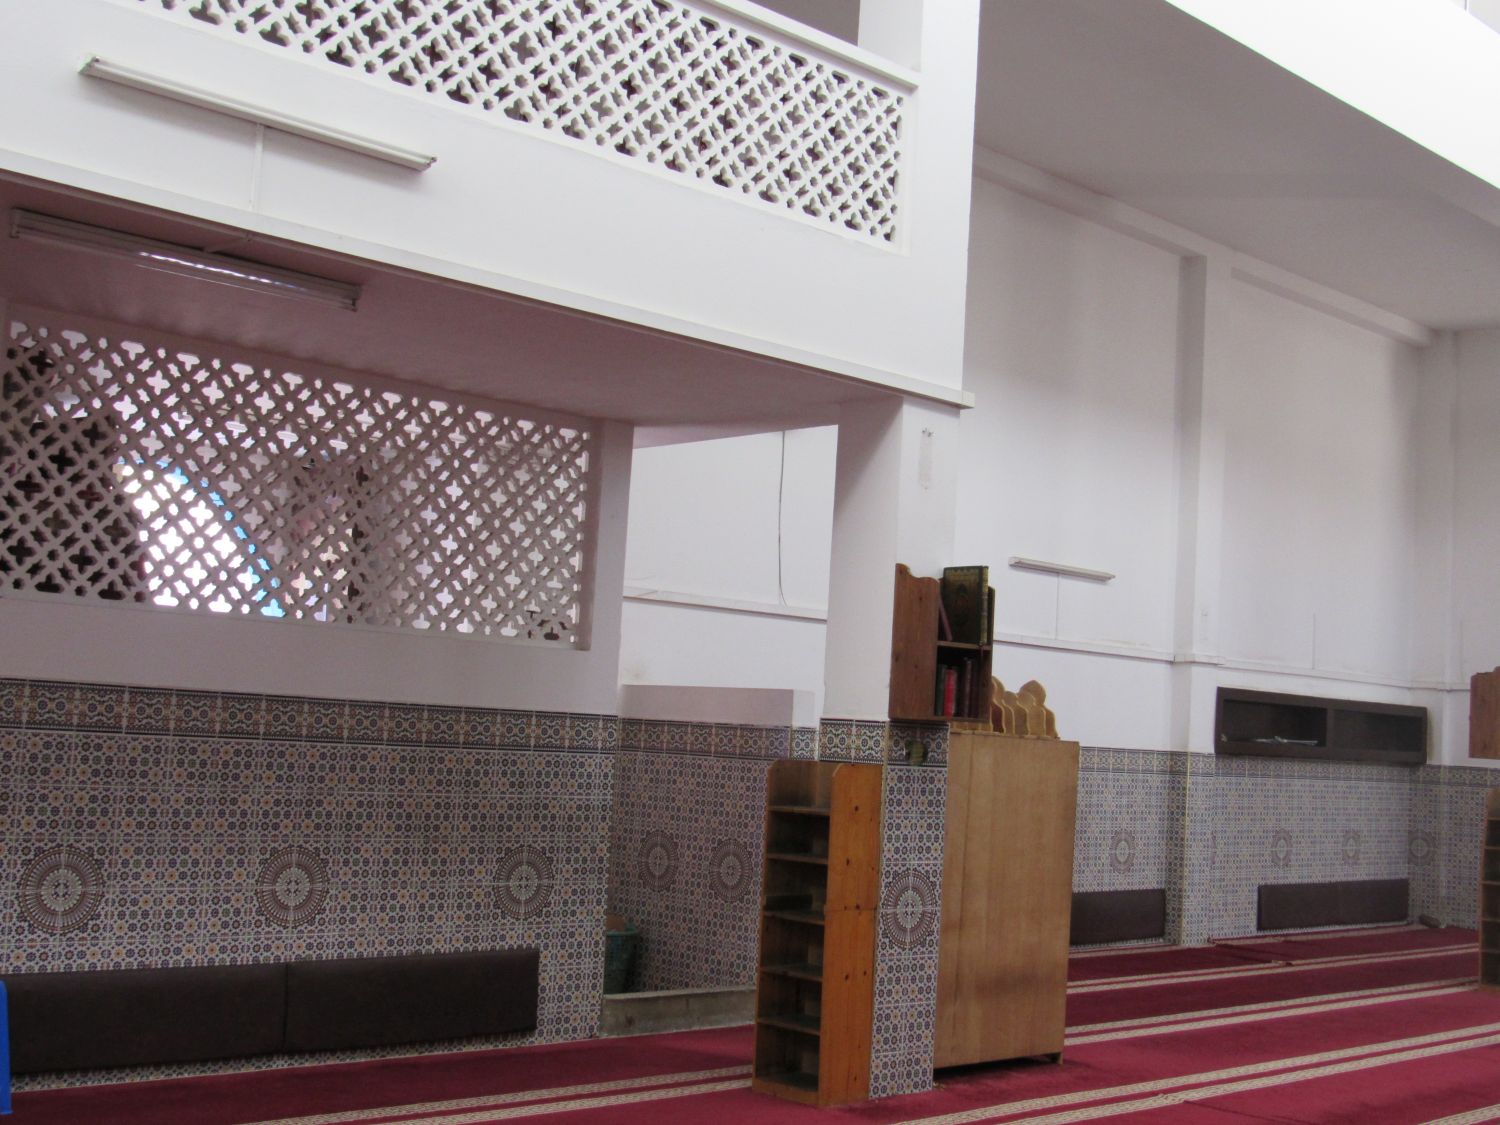 Mosquée El Mellah - Interior view, prayer hall and carvings